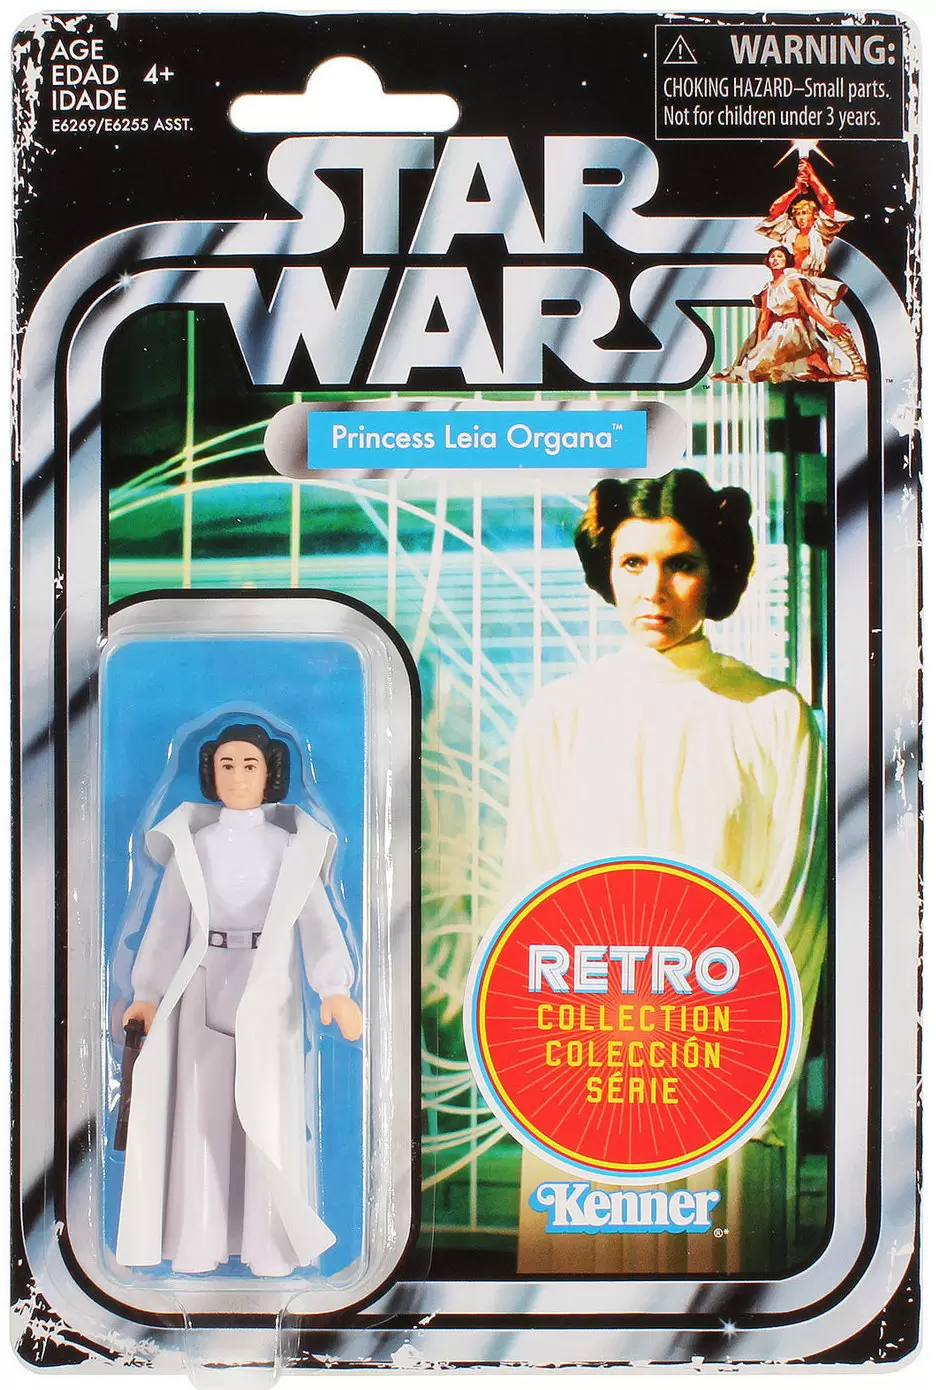 Retro Collection - Princess Leia Organa